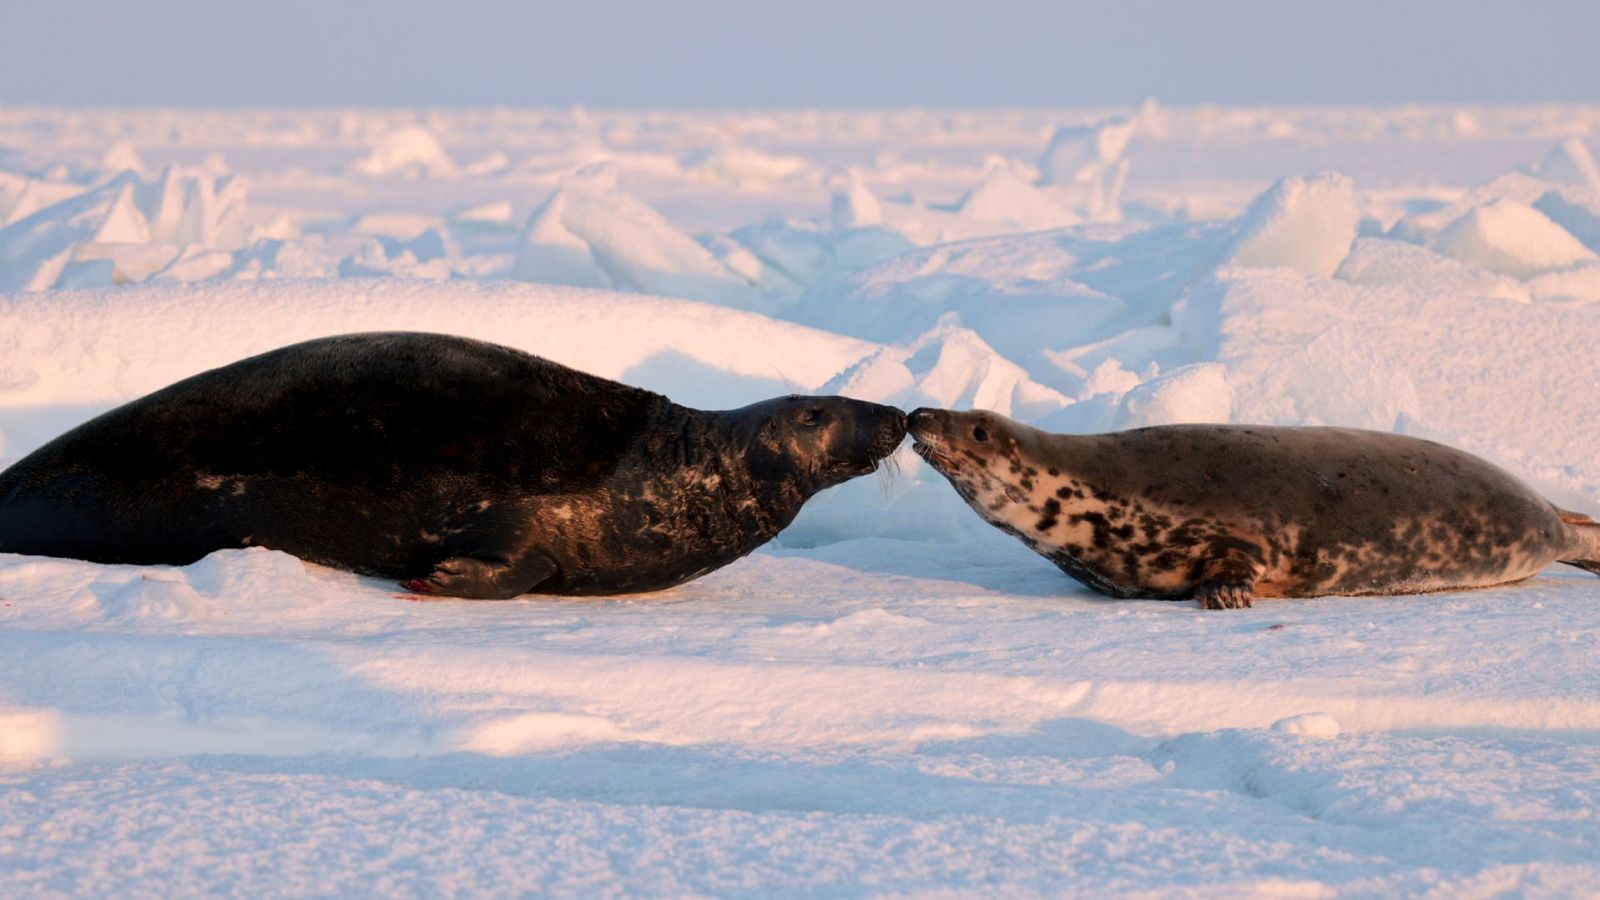 Somos documentales - La vida secreta de las focas